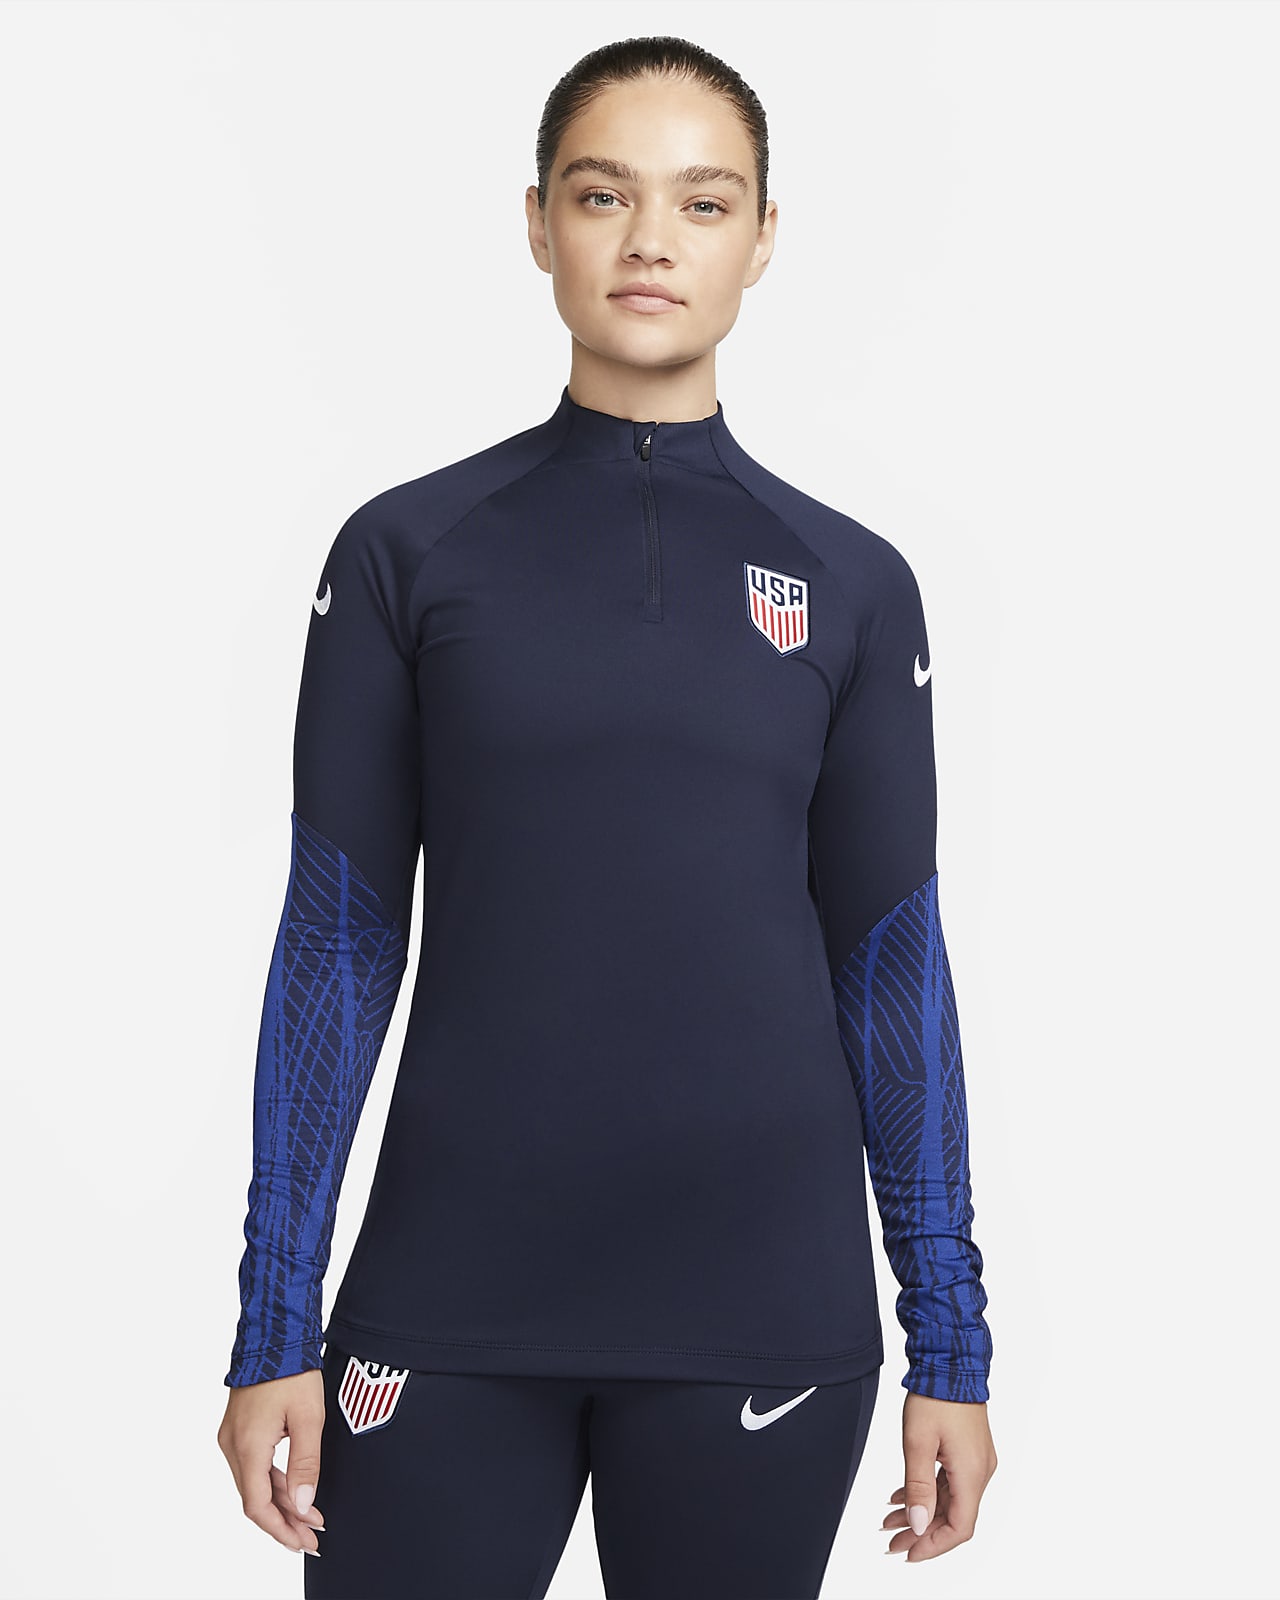 U.S. Strike Women's Nike Dri-FIT Knit Soccer Drill Top.